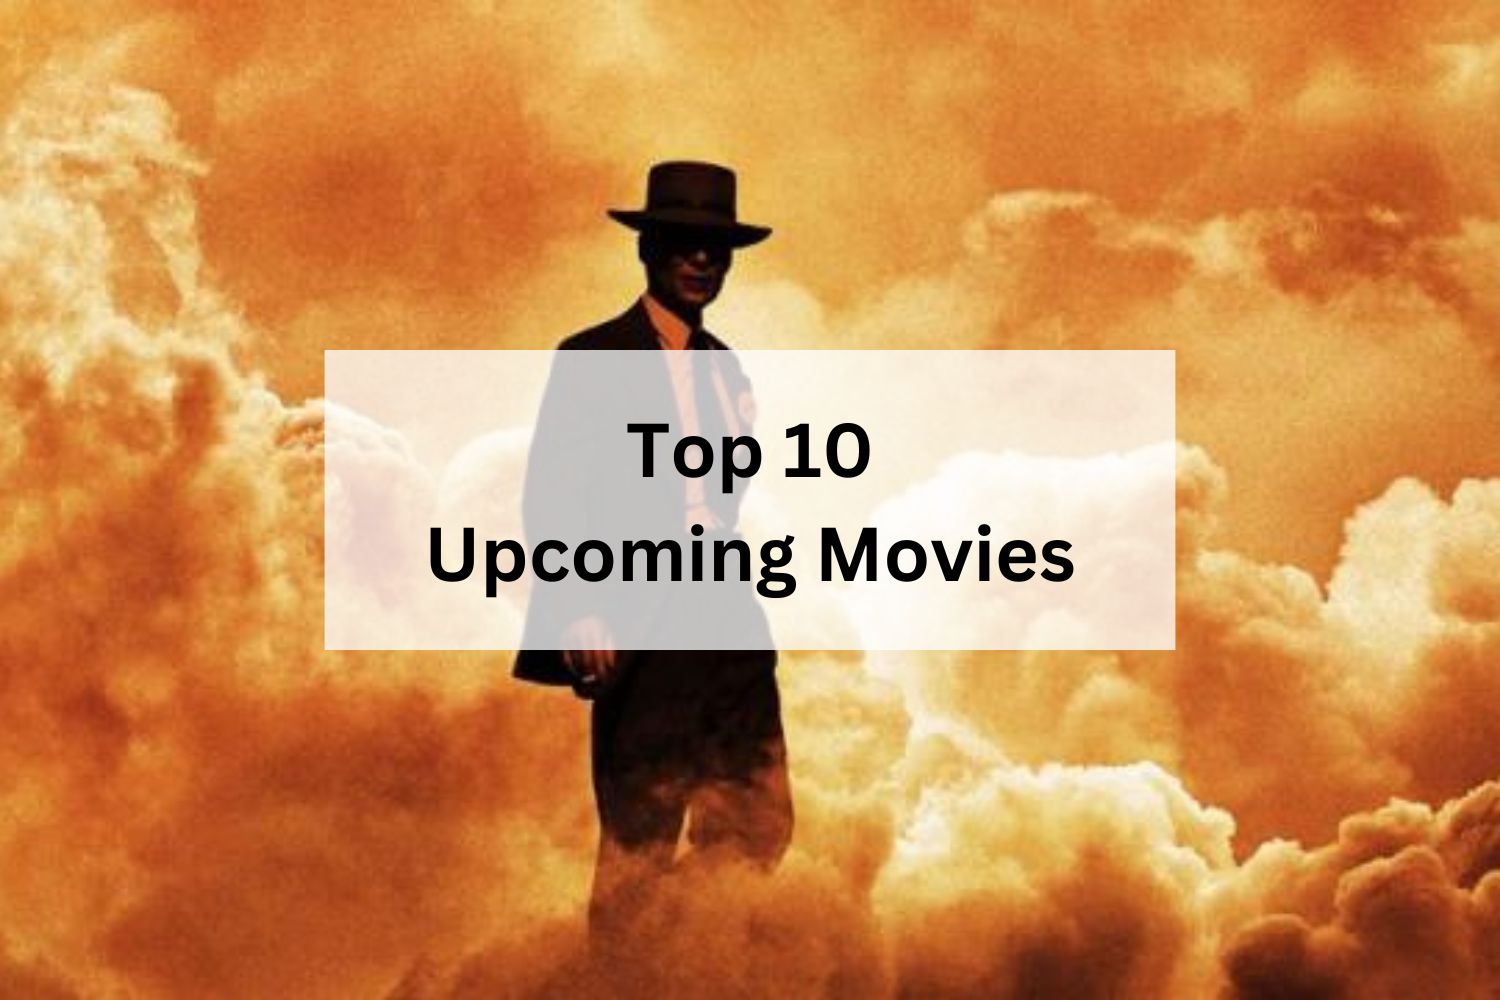 Top 10 Upcoming Movies